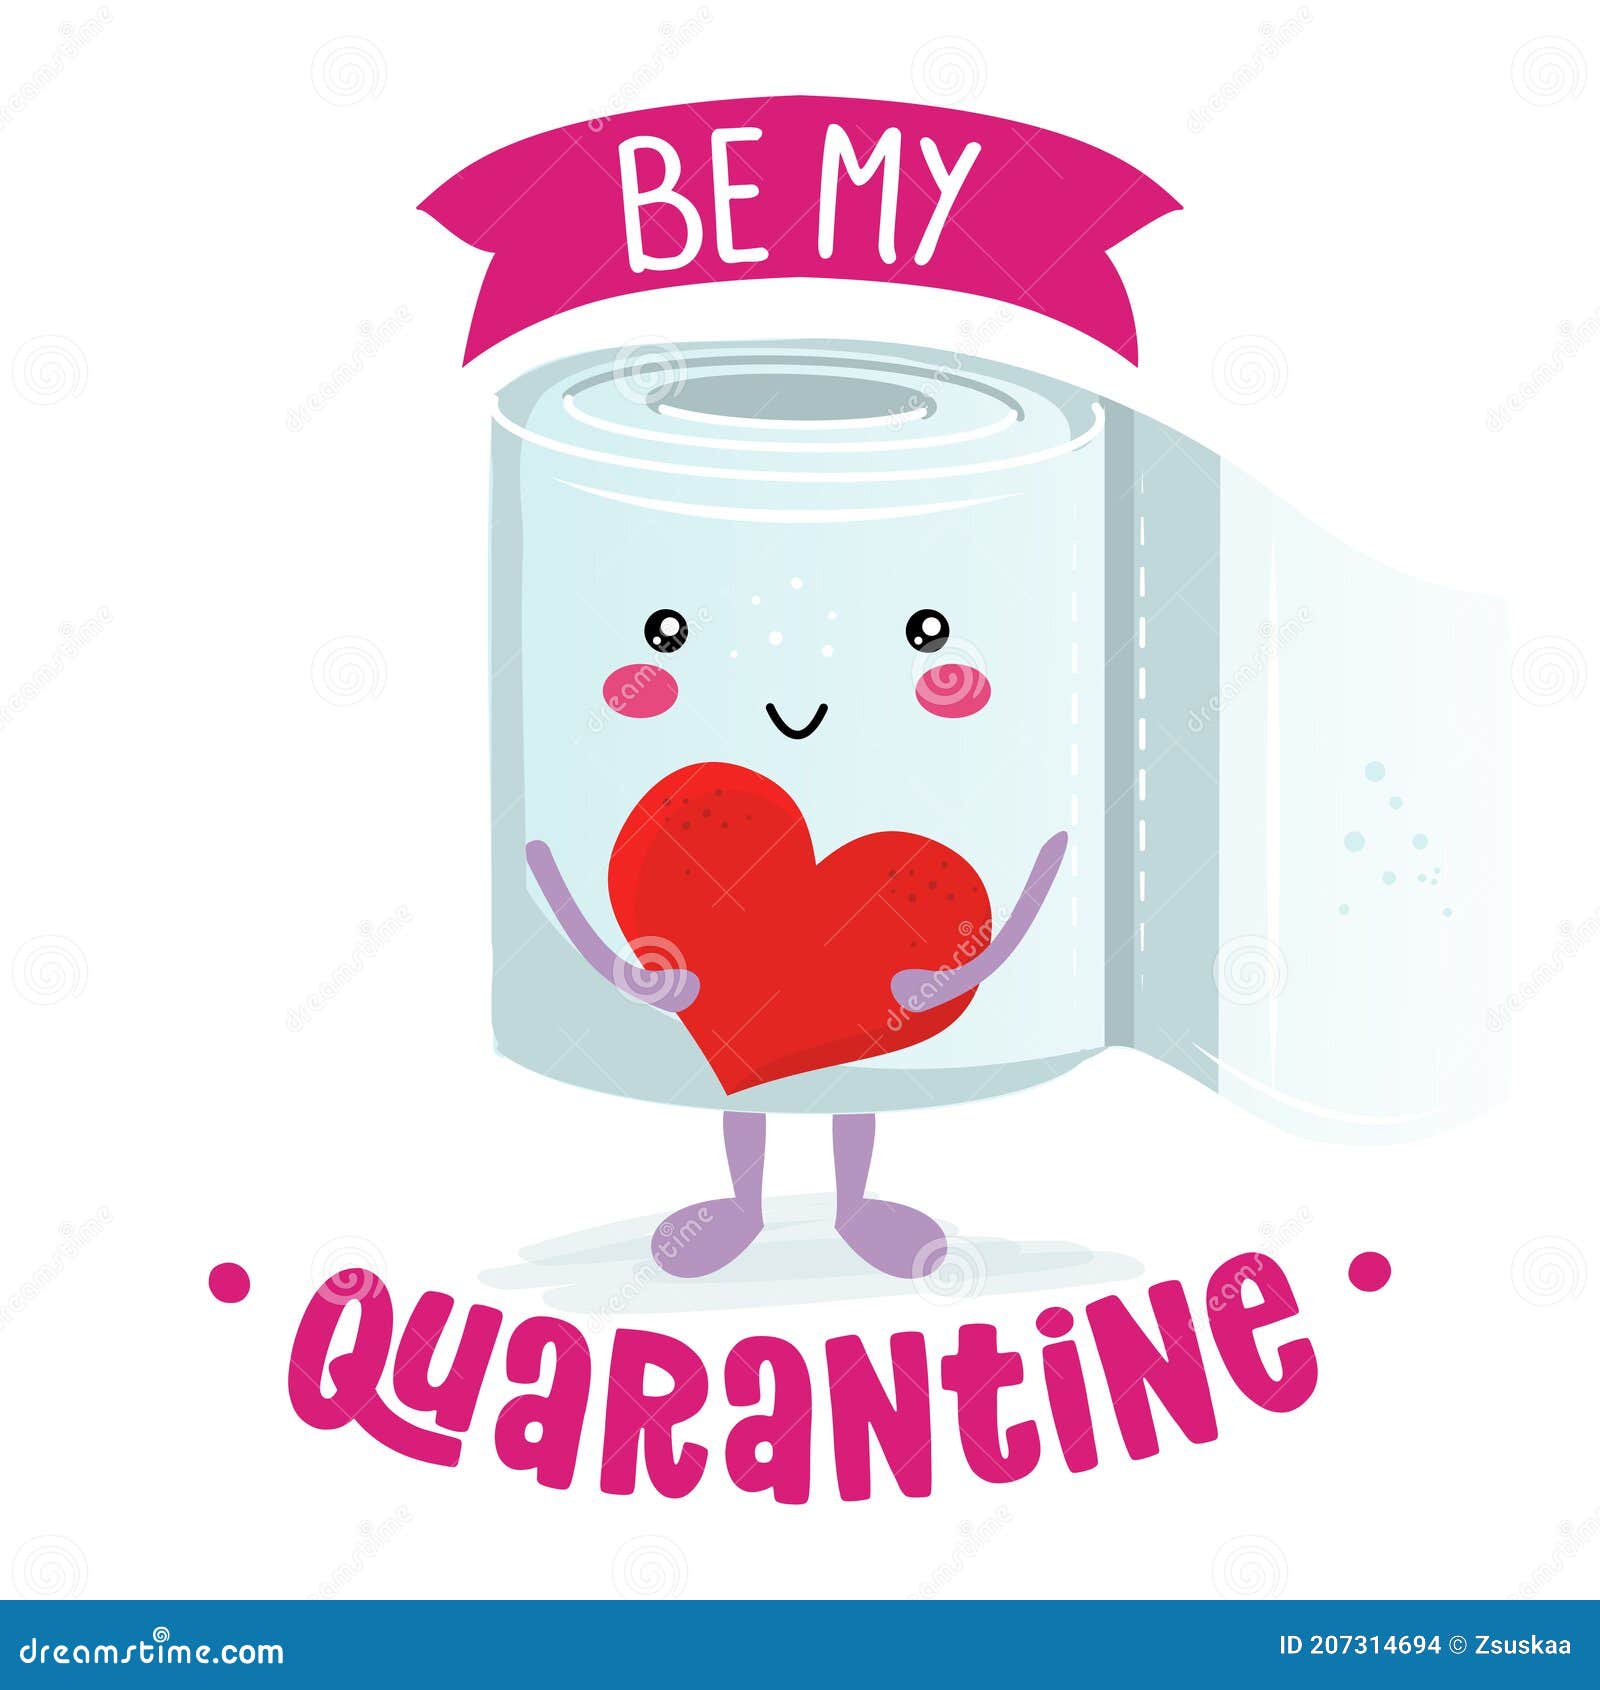 be my quarantine be my valentine? pun - toilett paper guote.